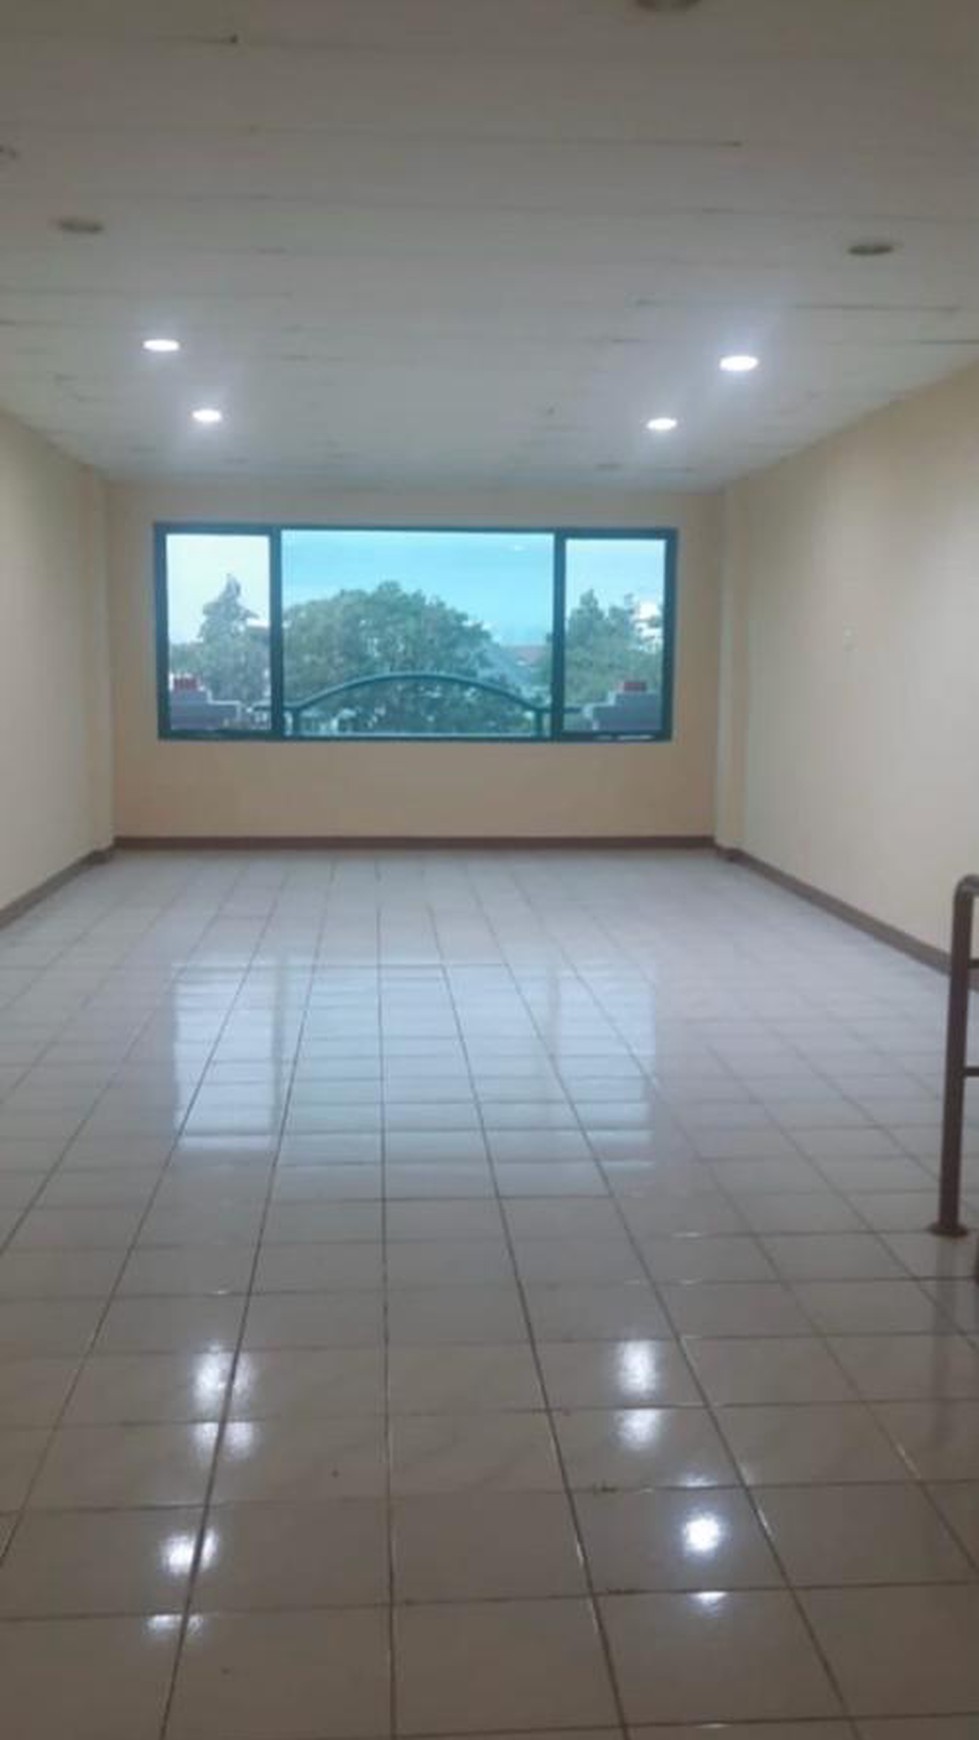 Ruko 3 1/2 lantai luas tanah 78 m2 di komplek Duta Mas Fatmawati siap pakai cocok untuk kantor 